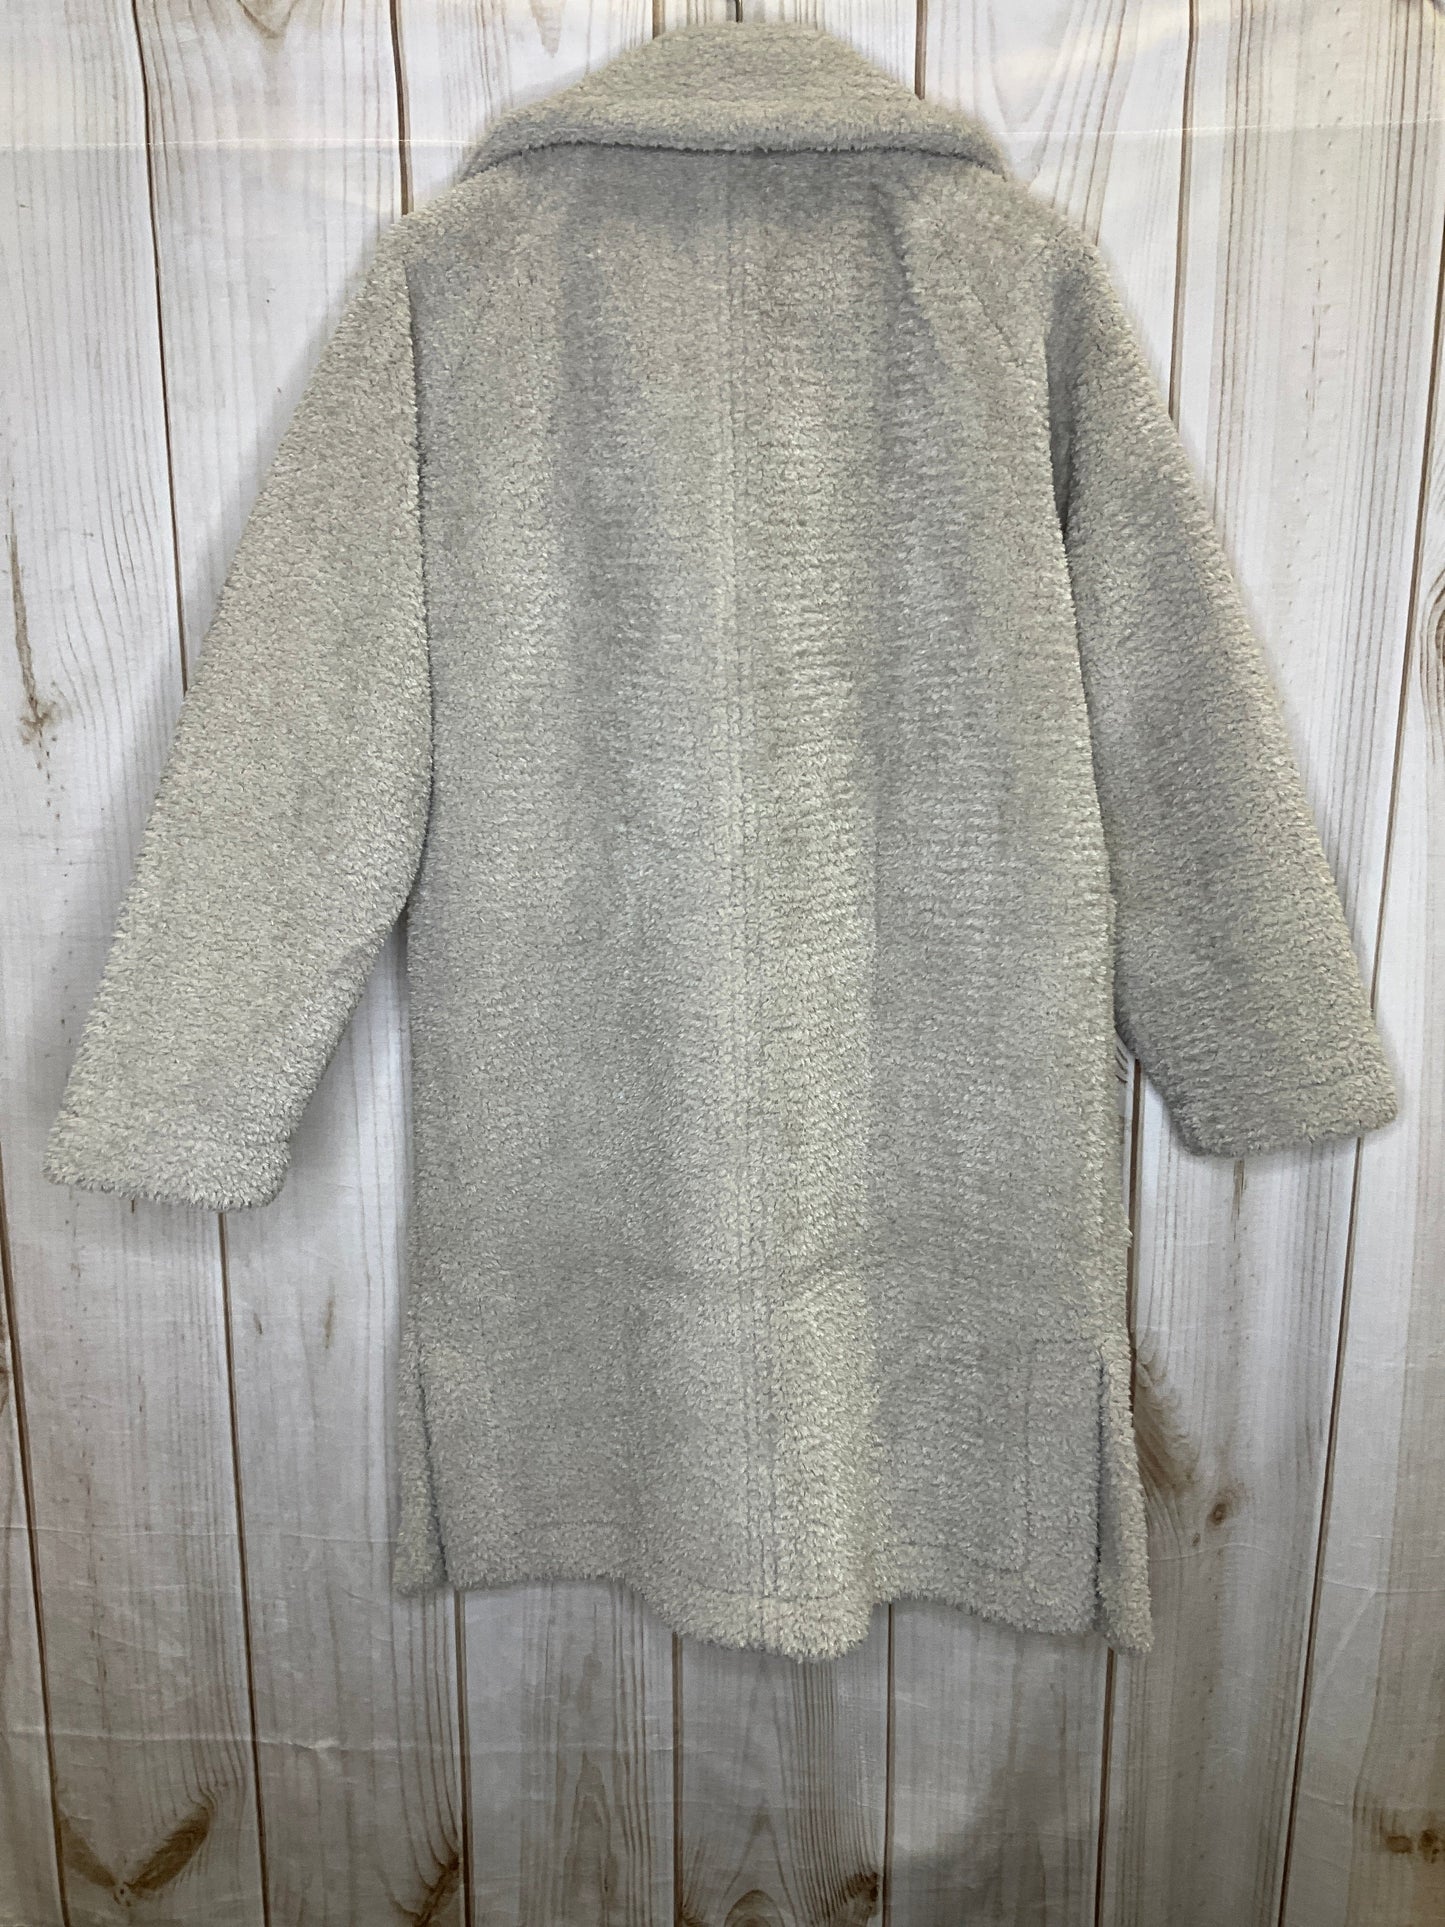 Coat Peacoat By Rachel Zoe  Size: S